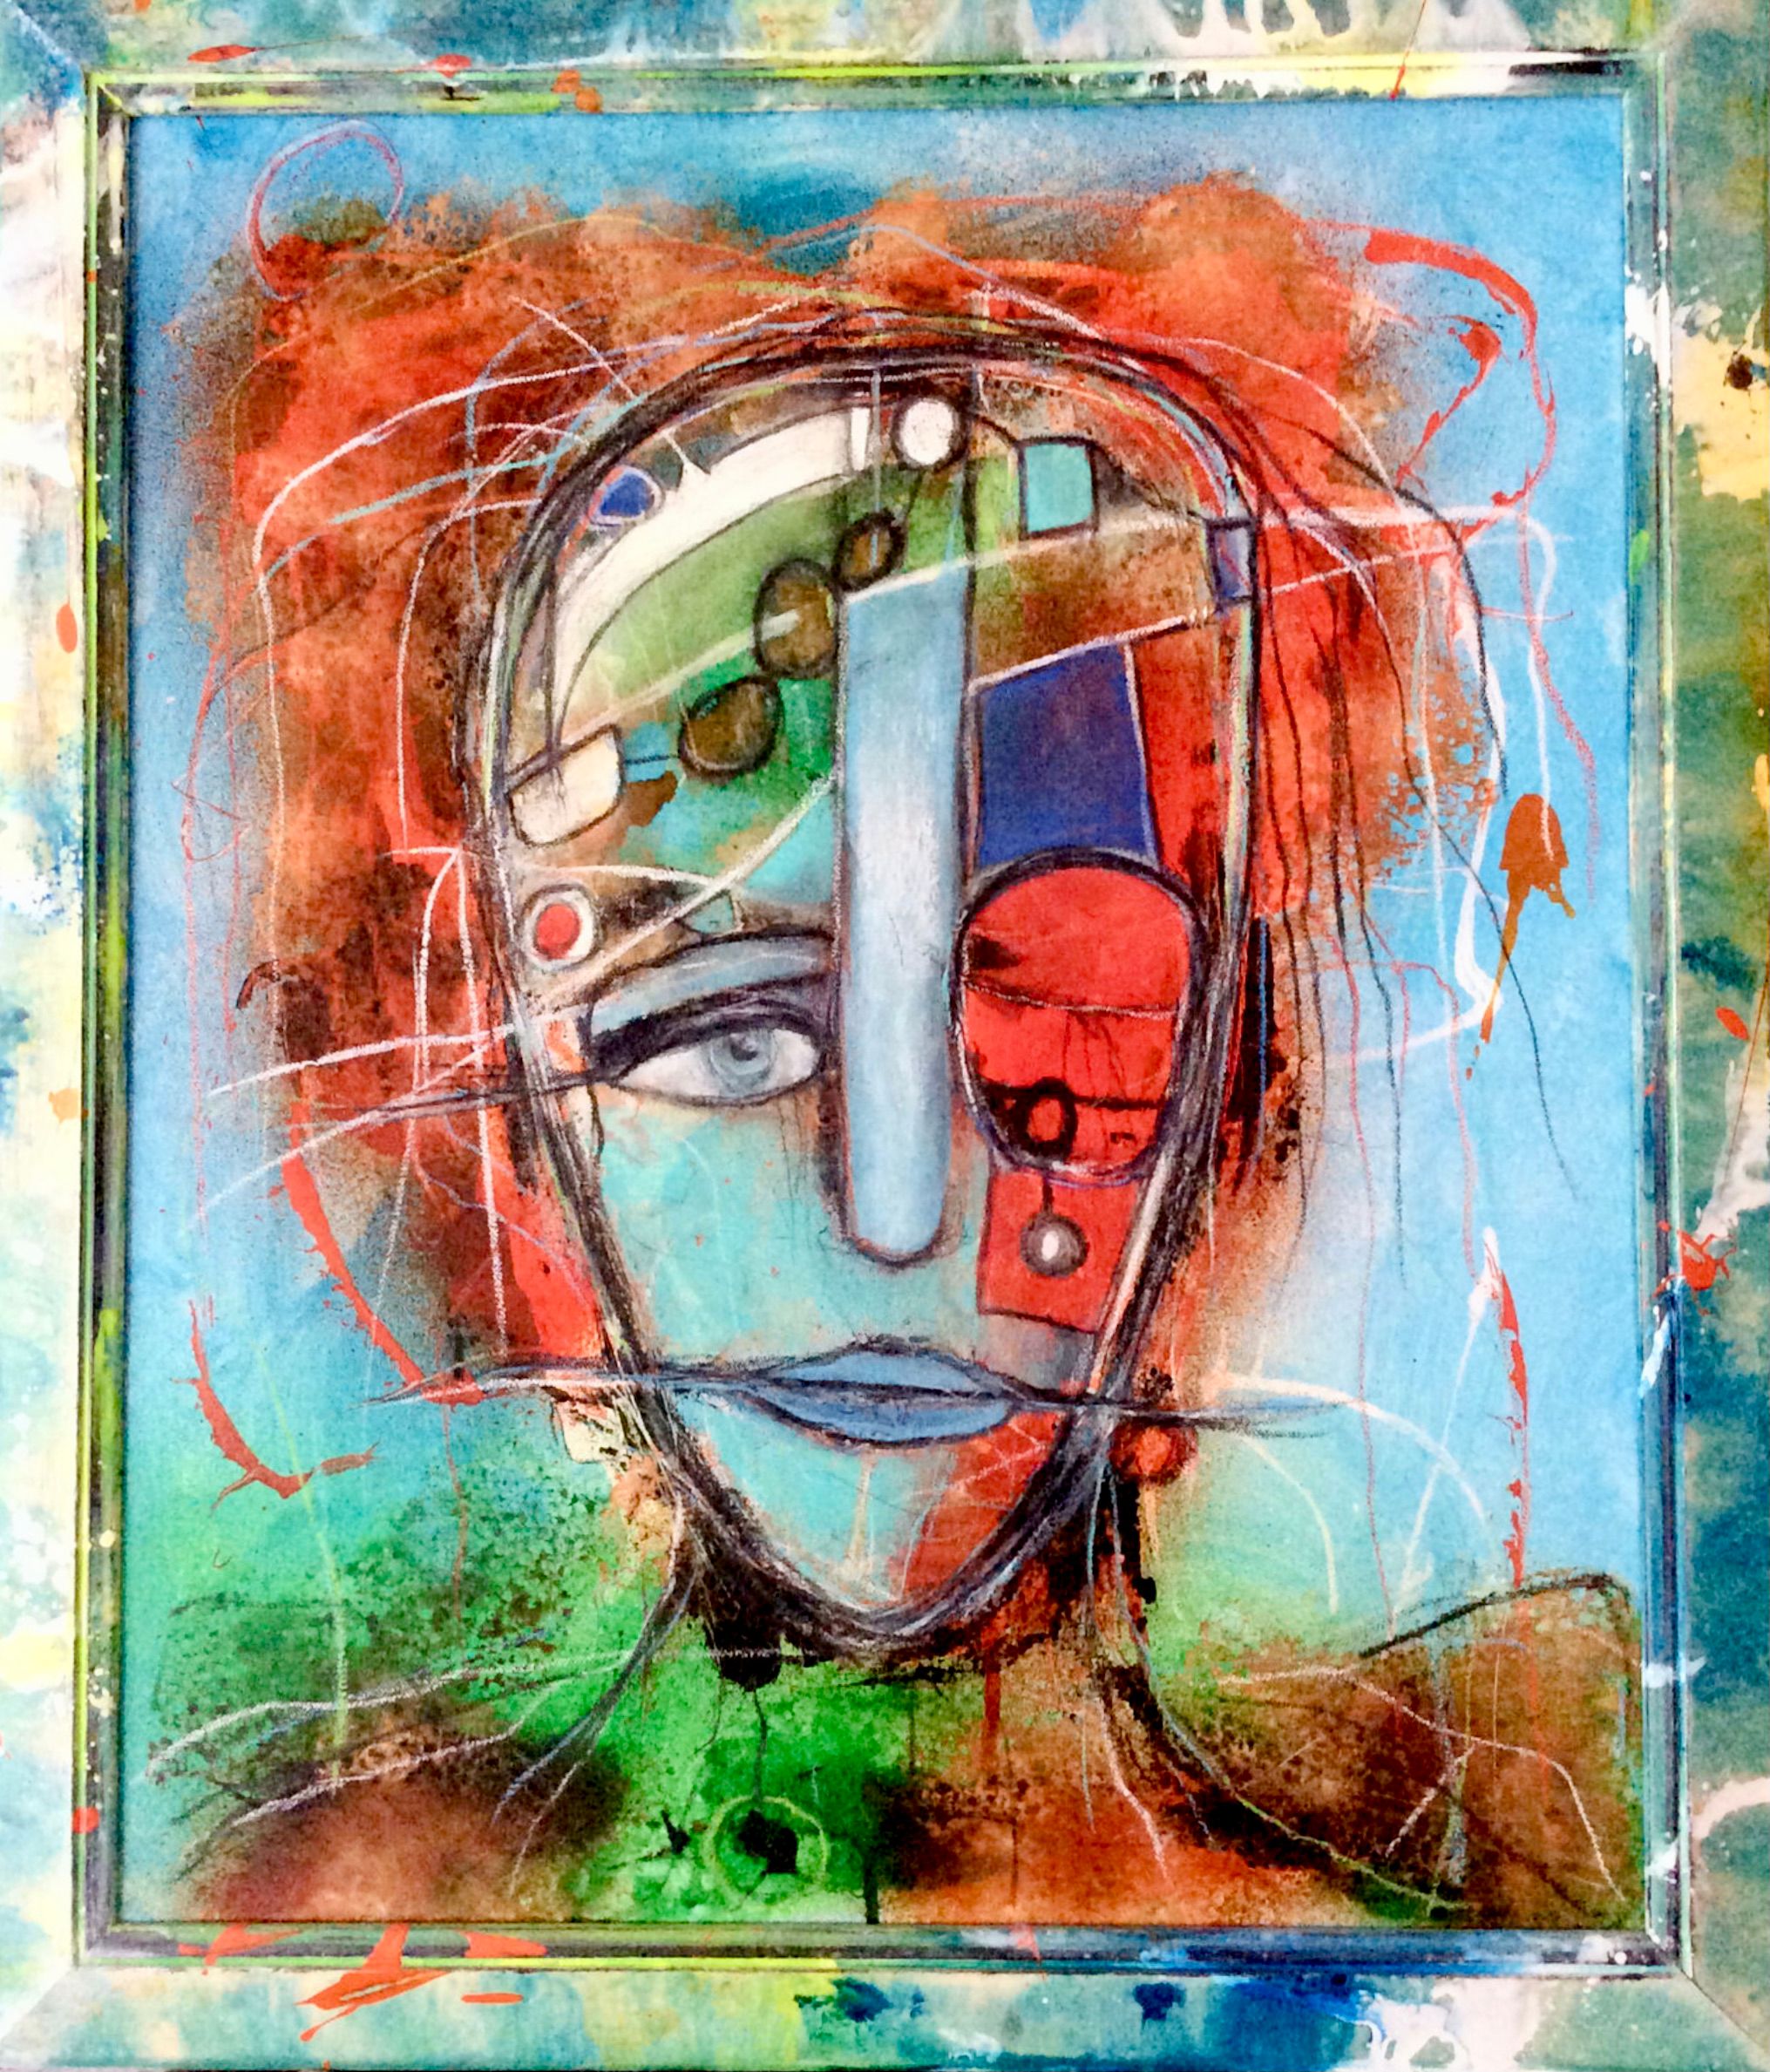 El expresivo retrato semi-abstracto "Firewall" de Ilona Schmidt muestra el rostro de una mujer. hombre en el foco de la digitalización. Los colores rojo, naranja, turquesa, verde y azul dominan este cuadro.